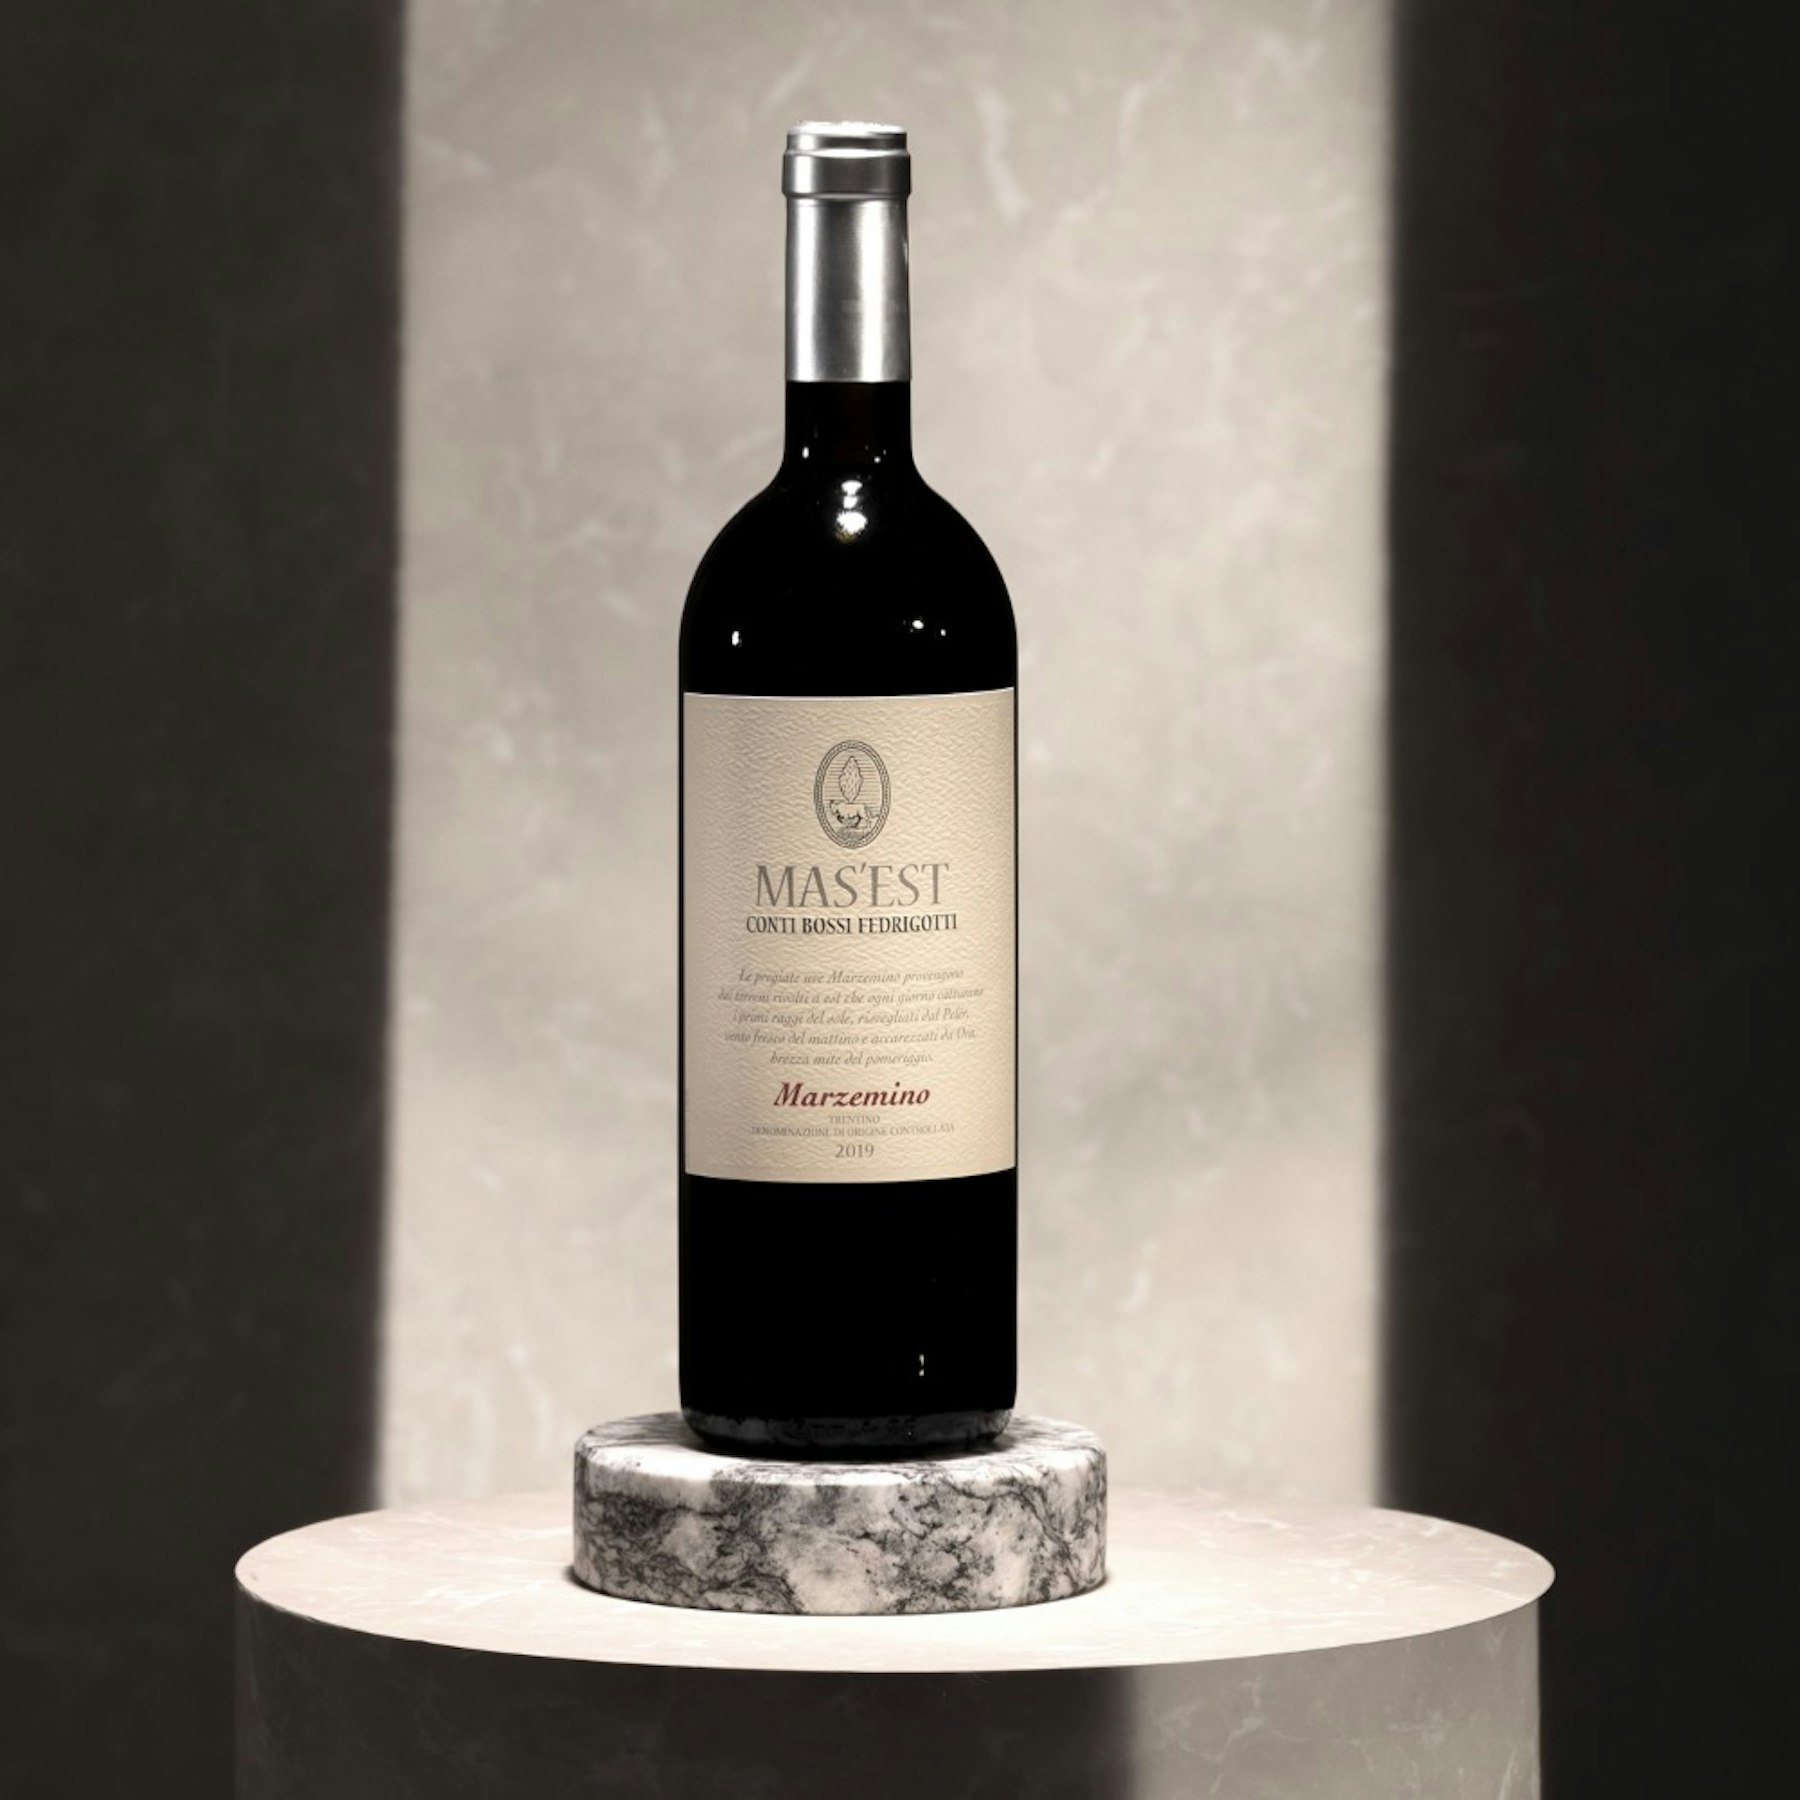  Es ist ein fruchtiger und frischer Wein aus leicht getrockneten Marzemino-Trauben. Produkt der Terre delle Venezie